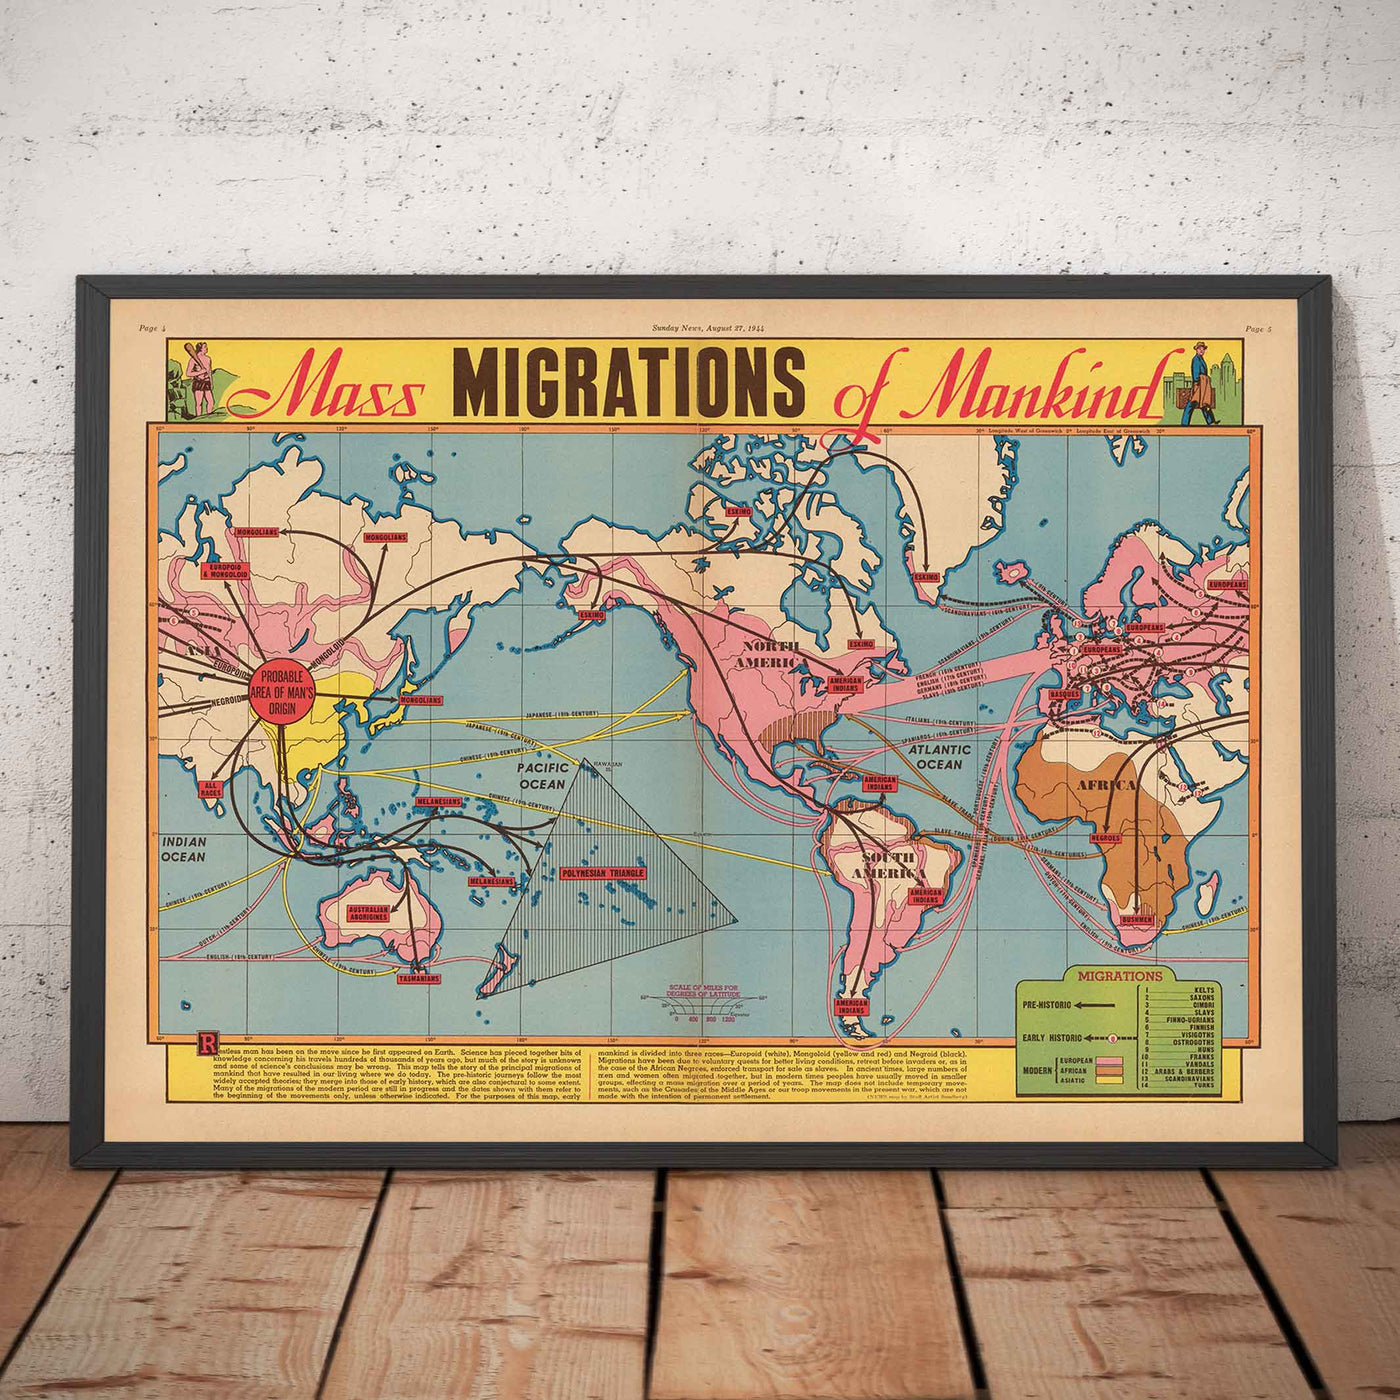 Antiguo mapa de las migraciones masivas de la humanidad, 1944 por Edwin Sundberg - Teoría del origen de Asia, comercio de esclavos, civilización prehistórica